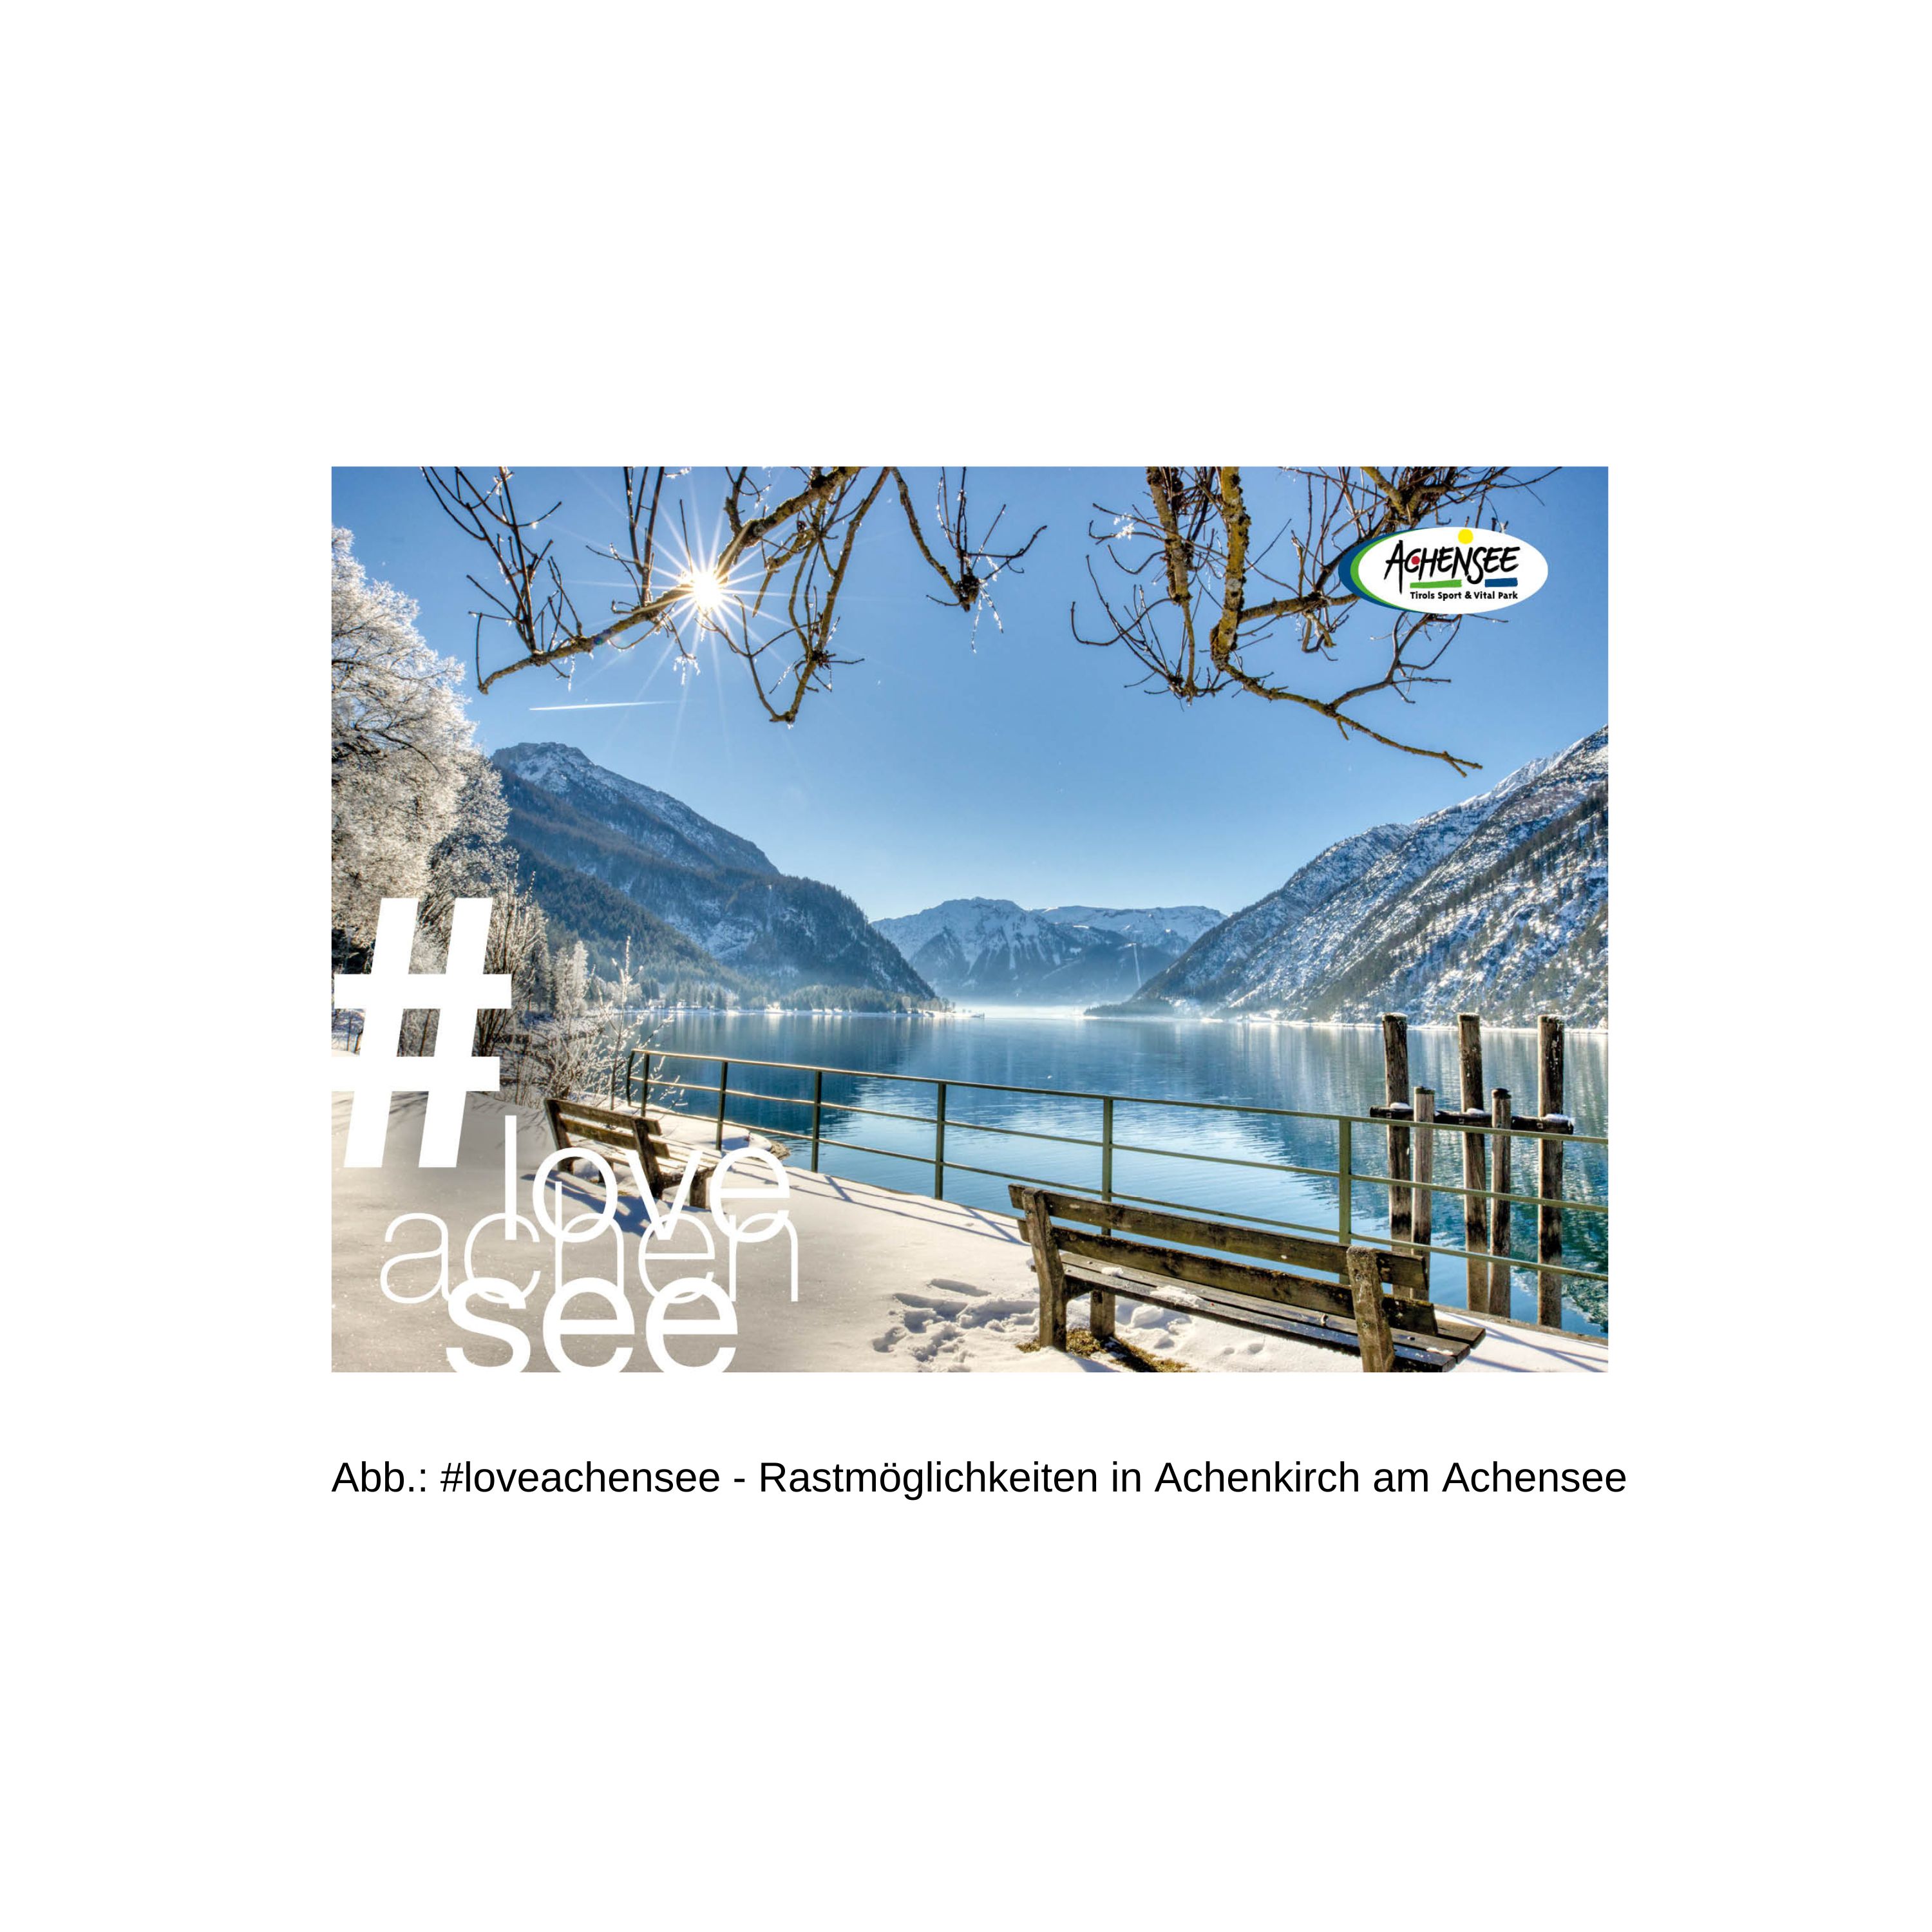 Postkarte aus Achenkirch am Achensee